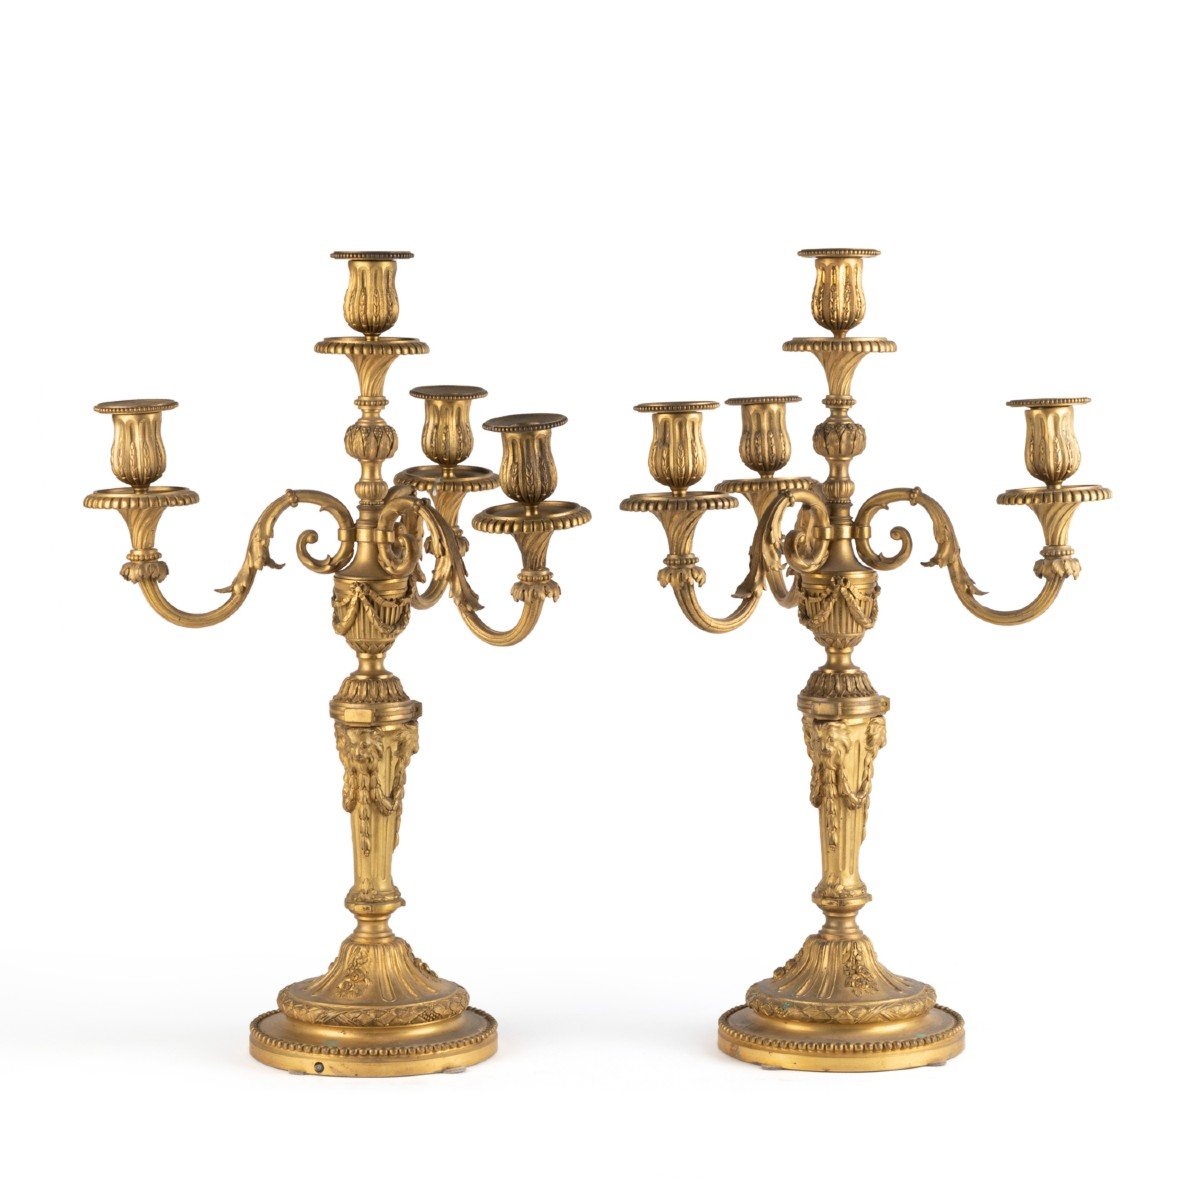 Paire de candélabres en bronze doré de style Louis XVI, XIXe